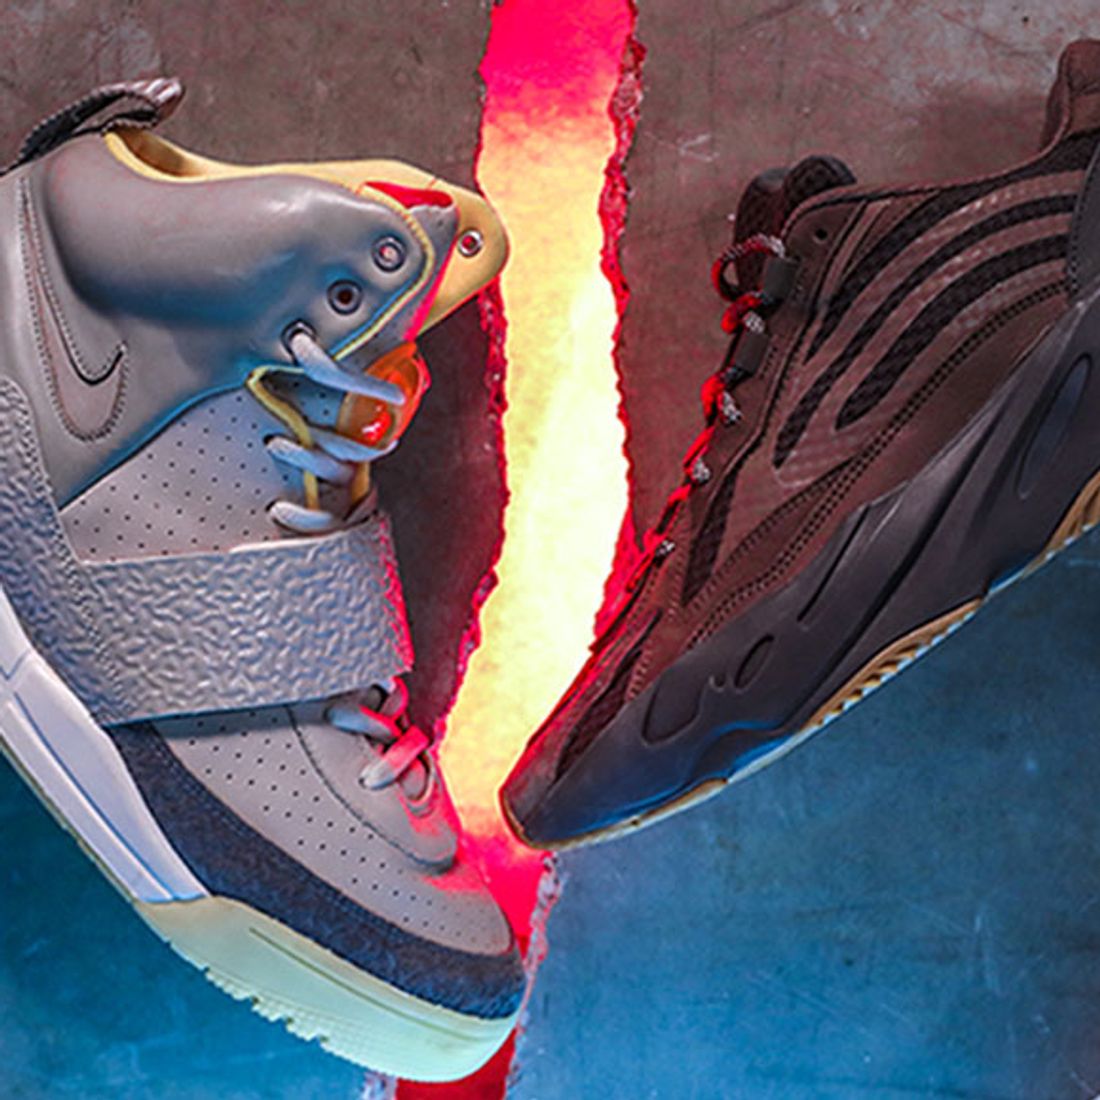 Comprometido veredicto Aprendiz VERSUS: Nike Yeezy > adidas Yeezy? - Sneaker Freaker